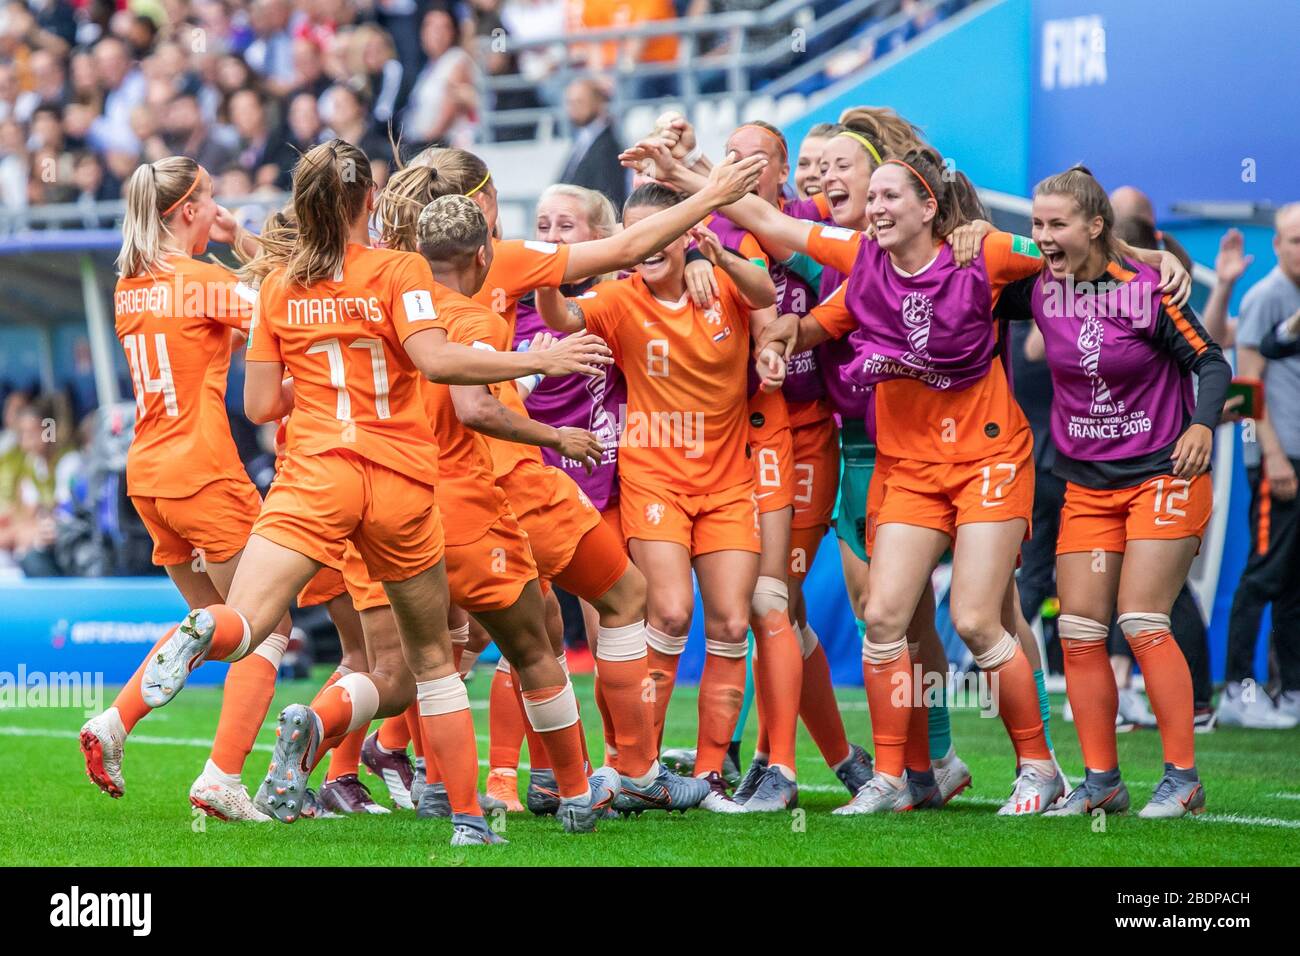 El equipo nacional de fútbol femenino de Holanda durante el partido de la Mundial Femenina de la FIFA 2019 entre países Bajos y Canadá en el estadio Stade Auguste-Delaune.(marcador final: